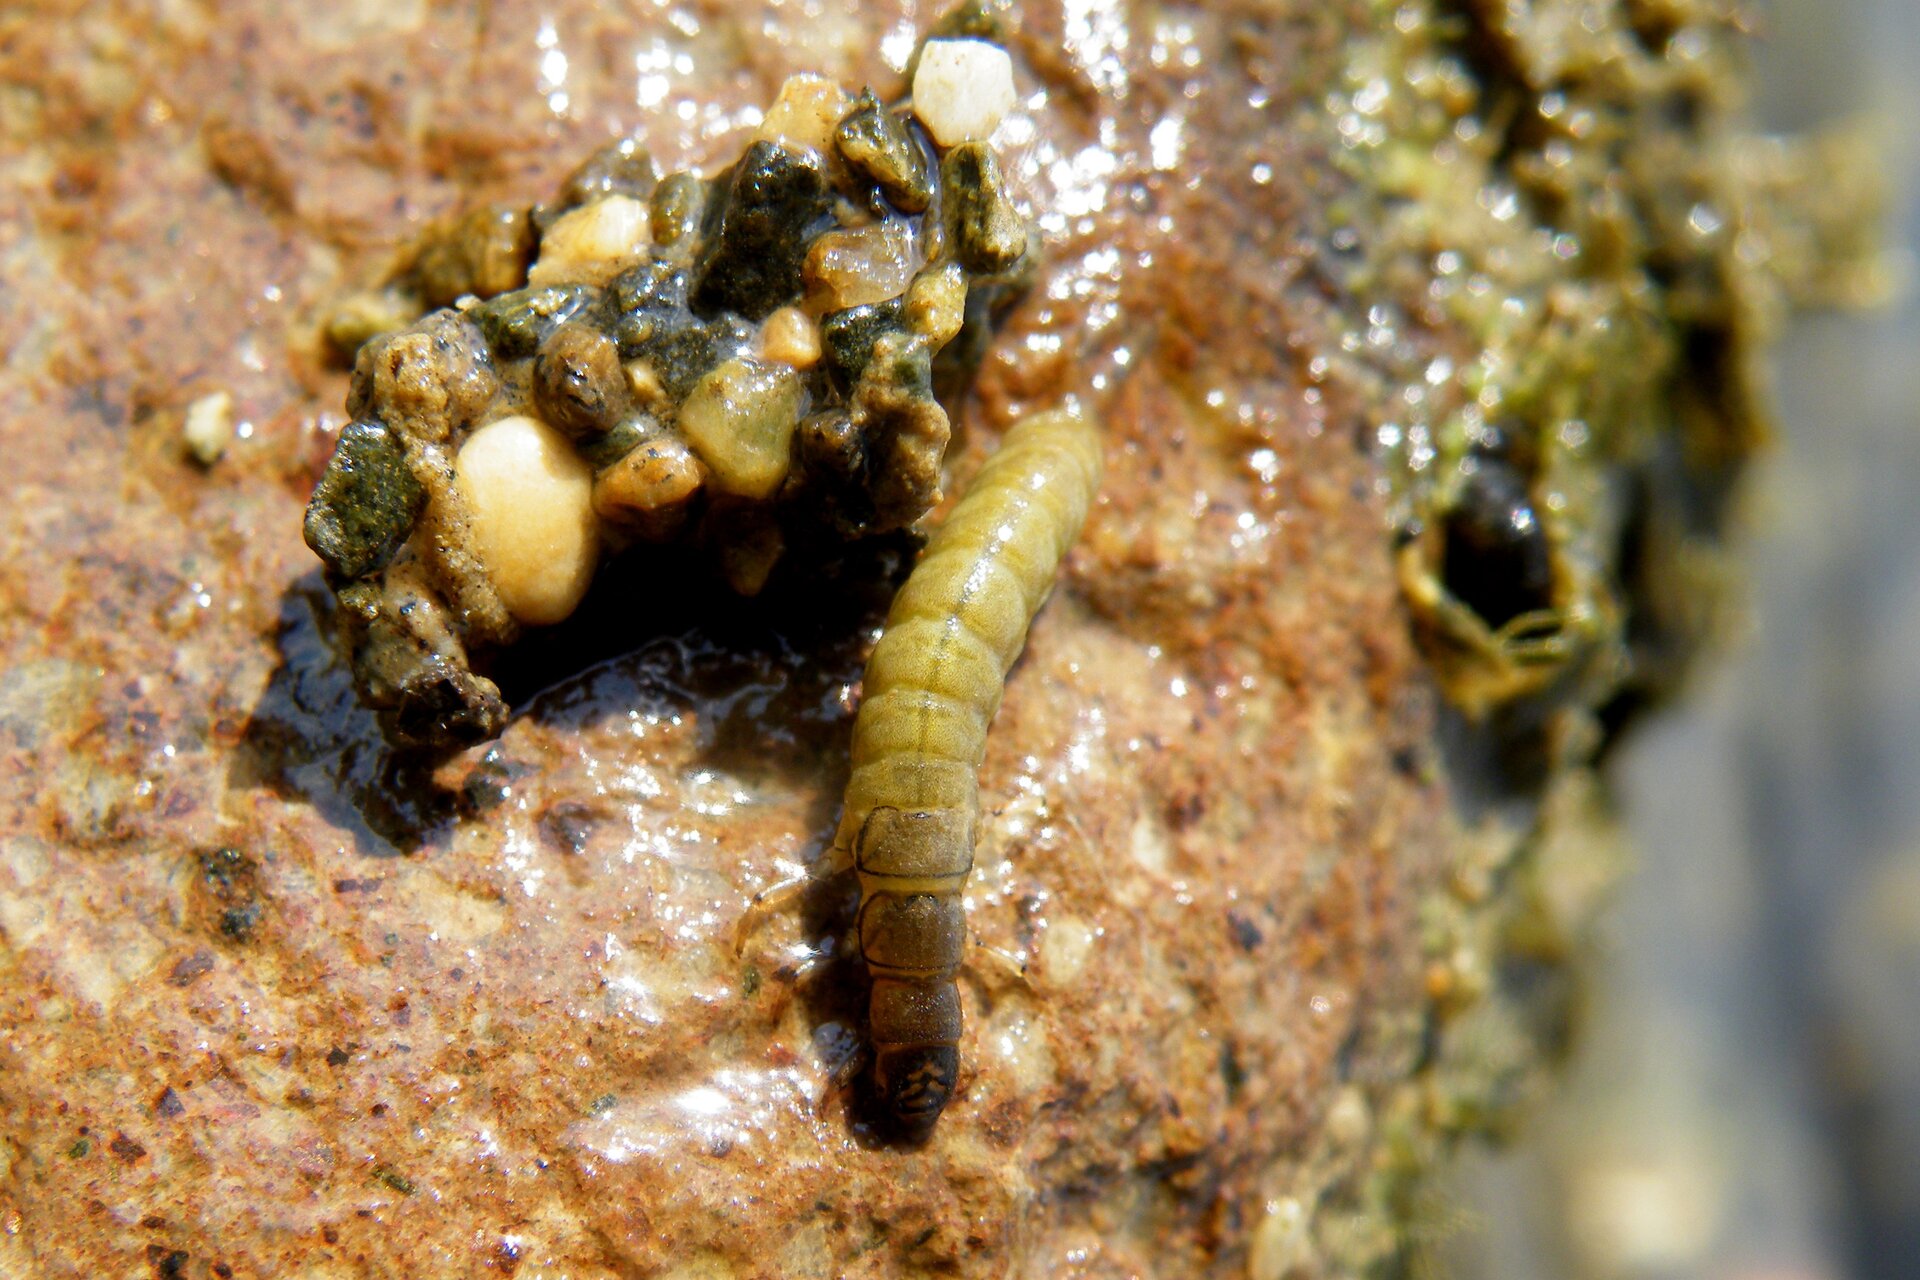 Fotografia prezentuje larwę chruścika. Jest ona biała z ciemnobrązową głową. Widać segmentowanie ciała larwy.